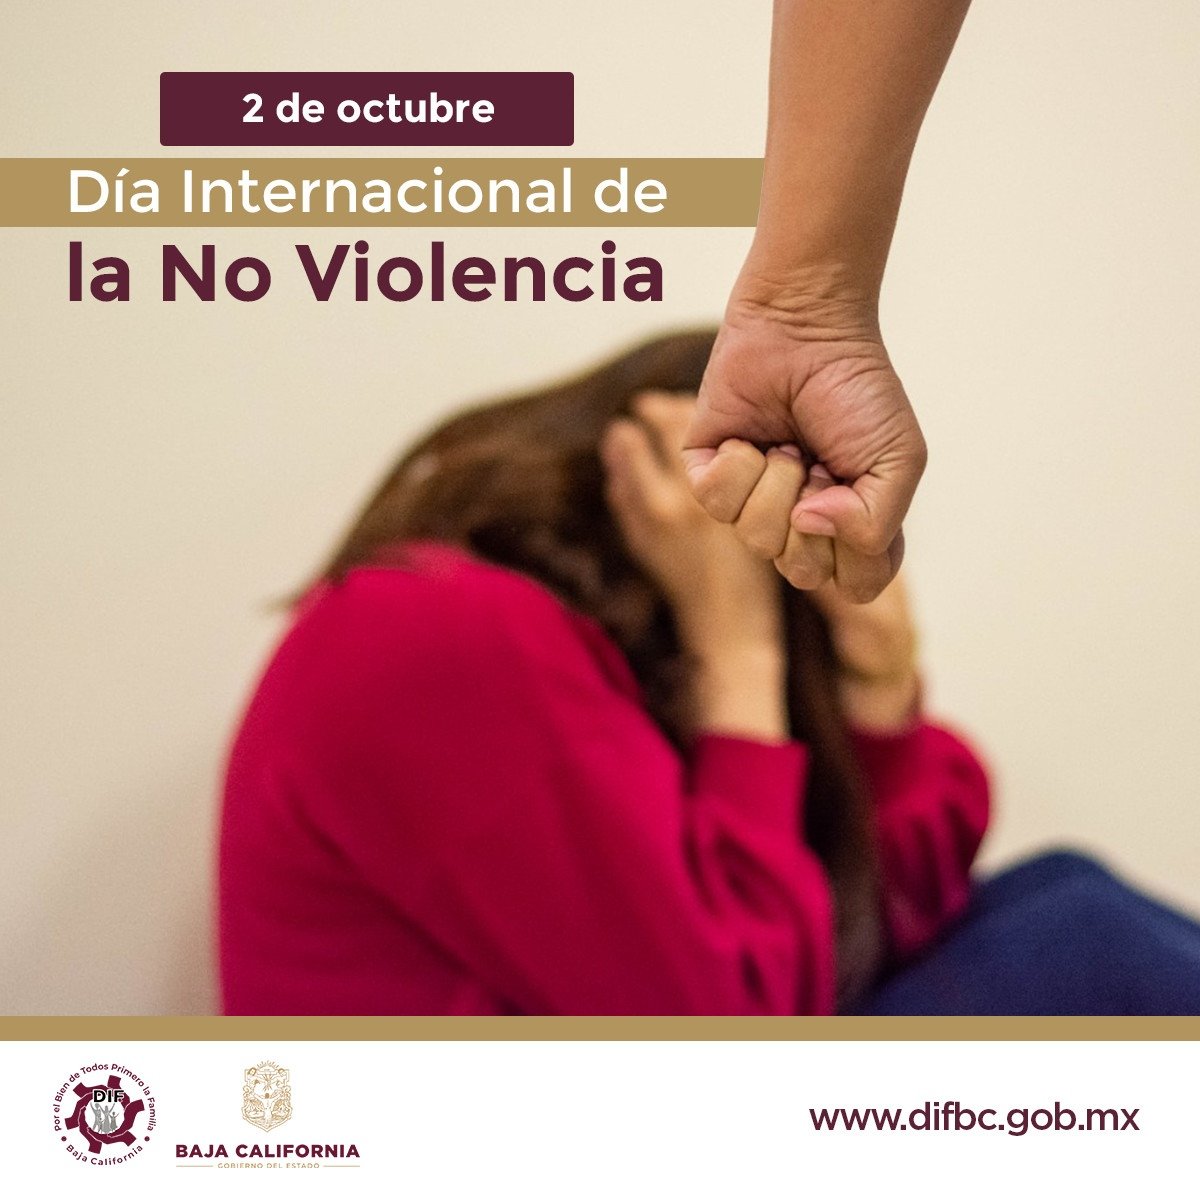 La familia DIF Baja California, se suma al llamado a la paz, tolerancia y comprensión, este 2 de octubre, “Día Internacional de la No Violencia”. #DIFBajaCalifornia #SigueLaTransformación